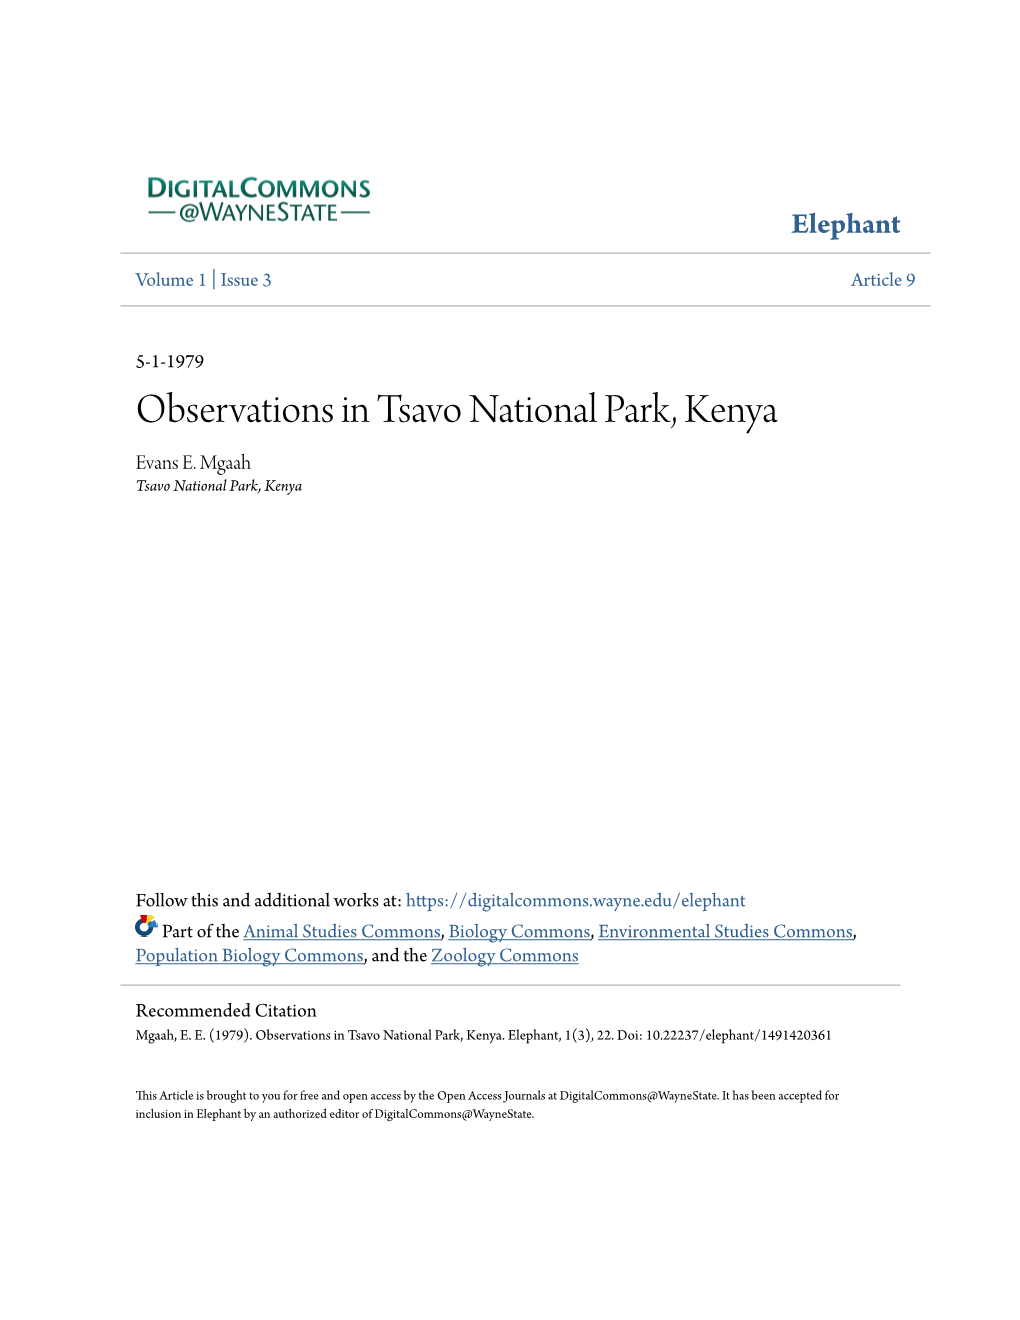 Observations in Tsavo National Park, Kenya Evans E